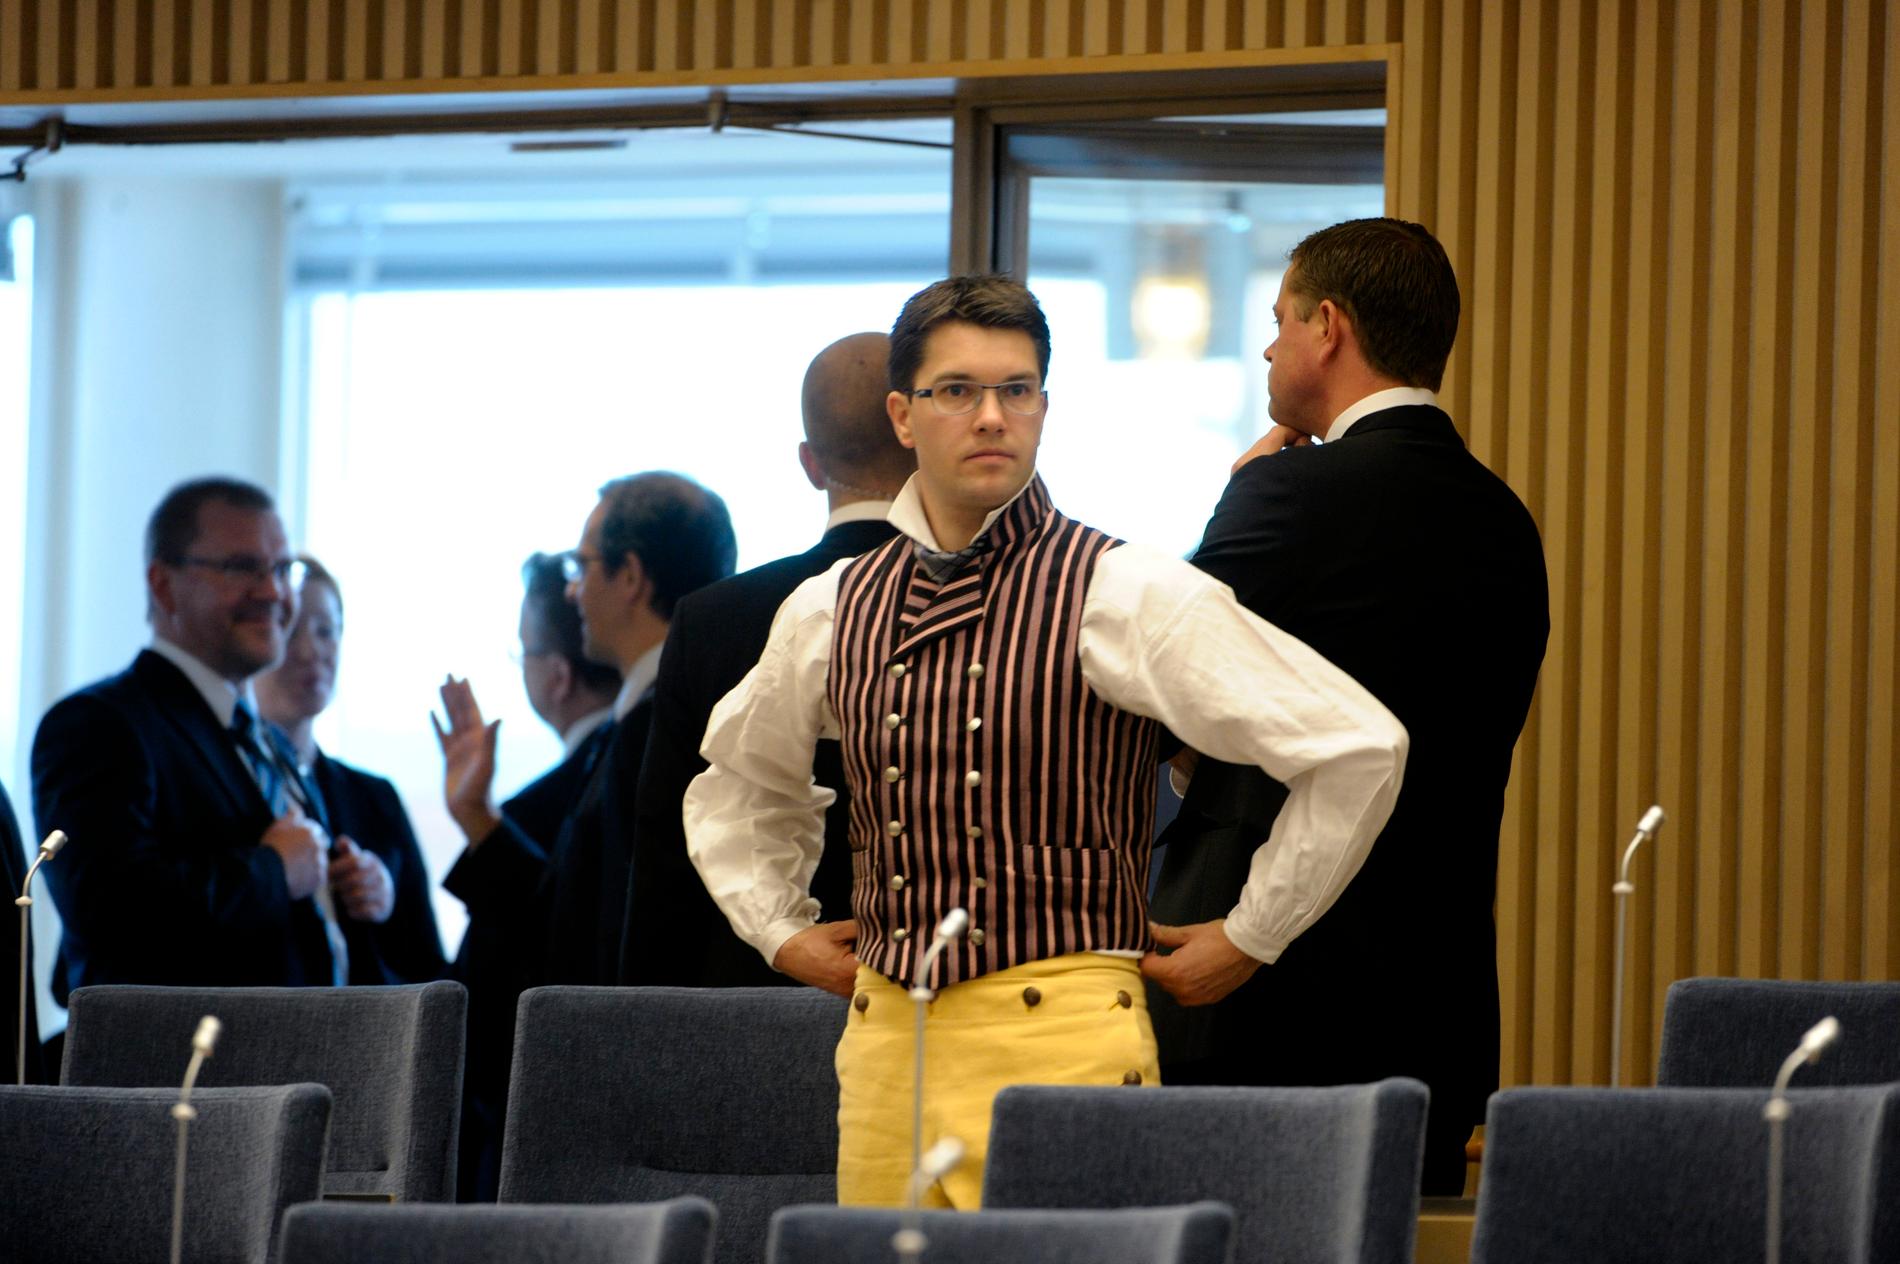 Sverigedemokraternas partiledare Jimmie Åkesson i folkdräkt letar efter sin plats i plenisalen i samband med riksmötets öppnande 2010.